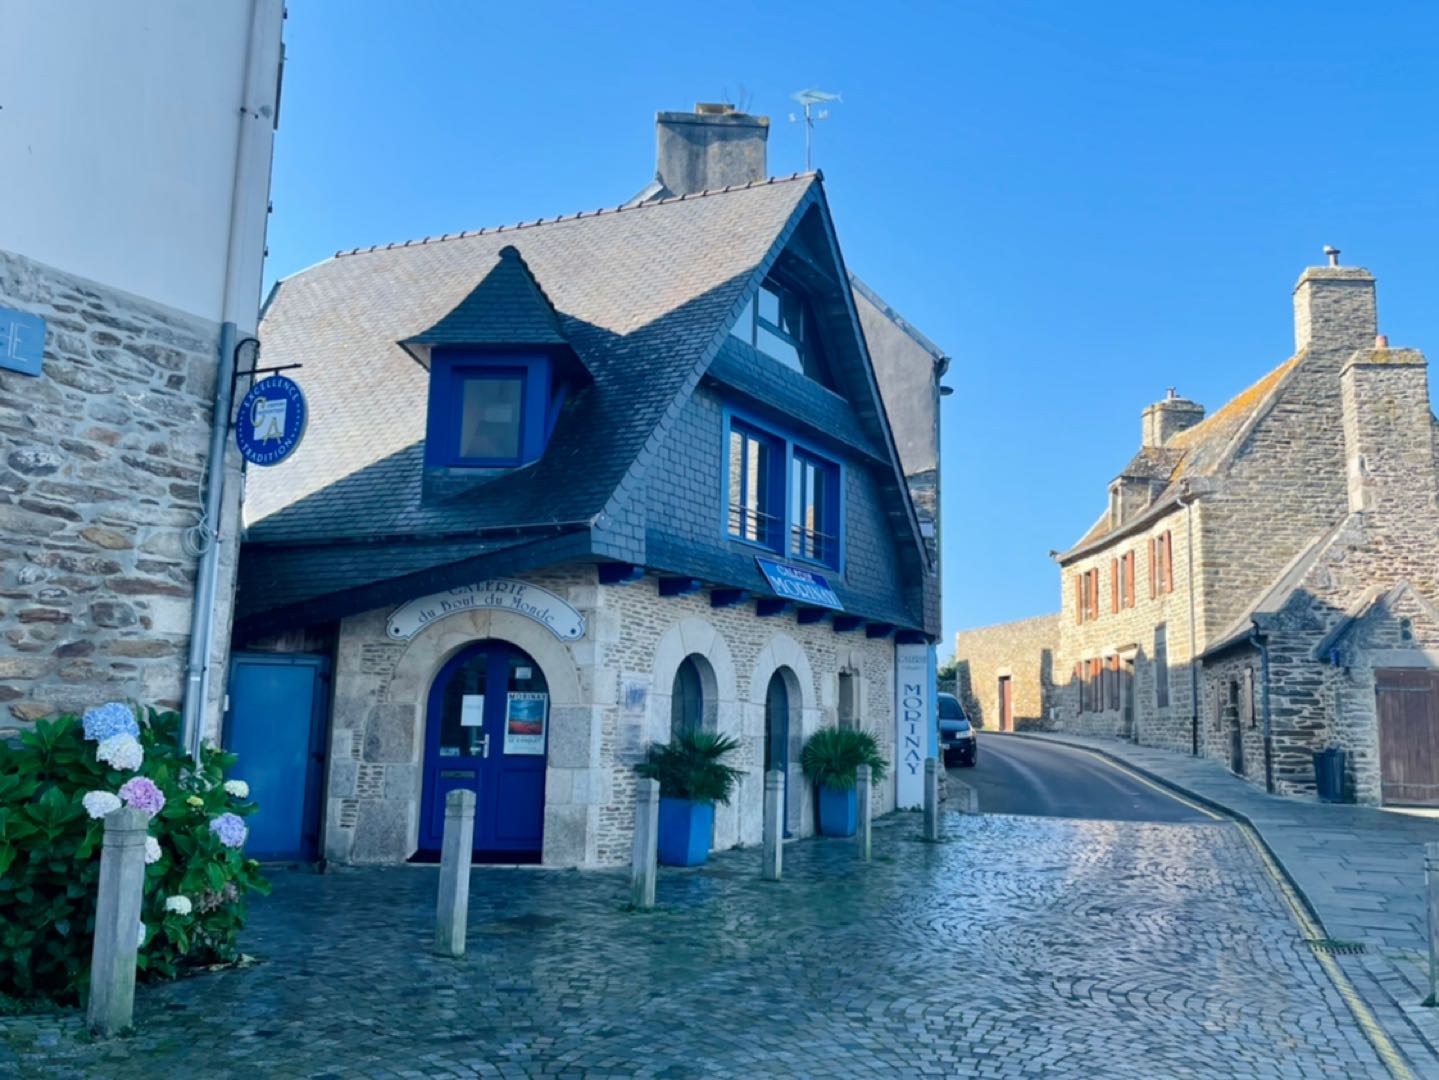 Zu sehen ist die pittoreske Stadt Le Conquet. Kleine Steinhäuser säumen eine sich hinauf windende Straße aus Kopfsteinpflaster.